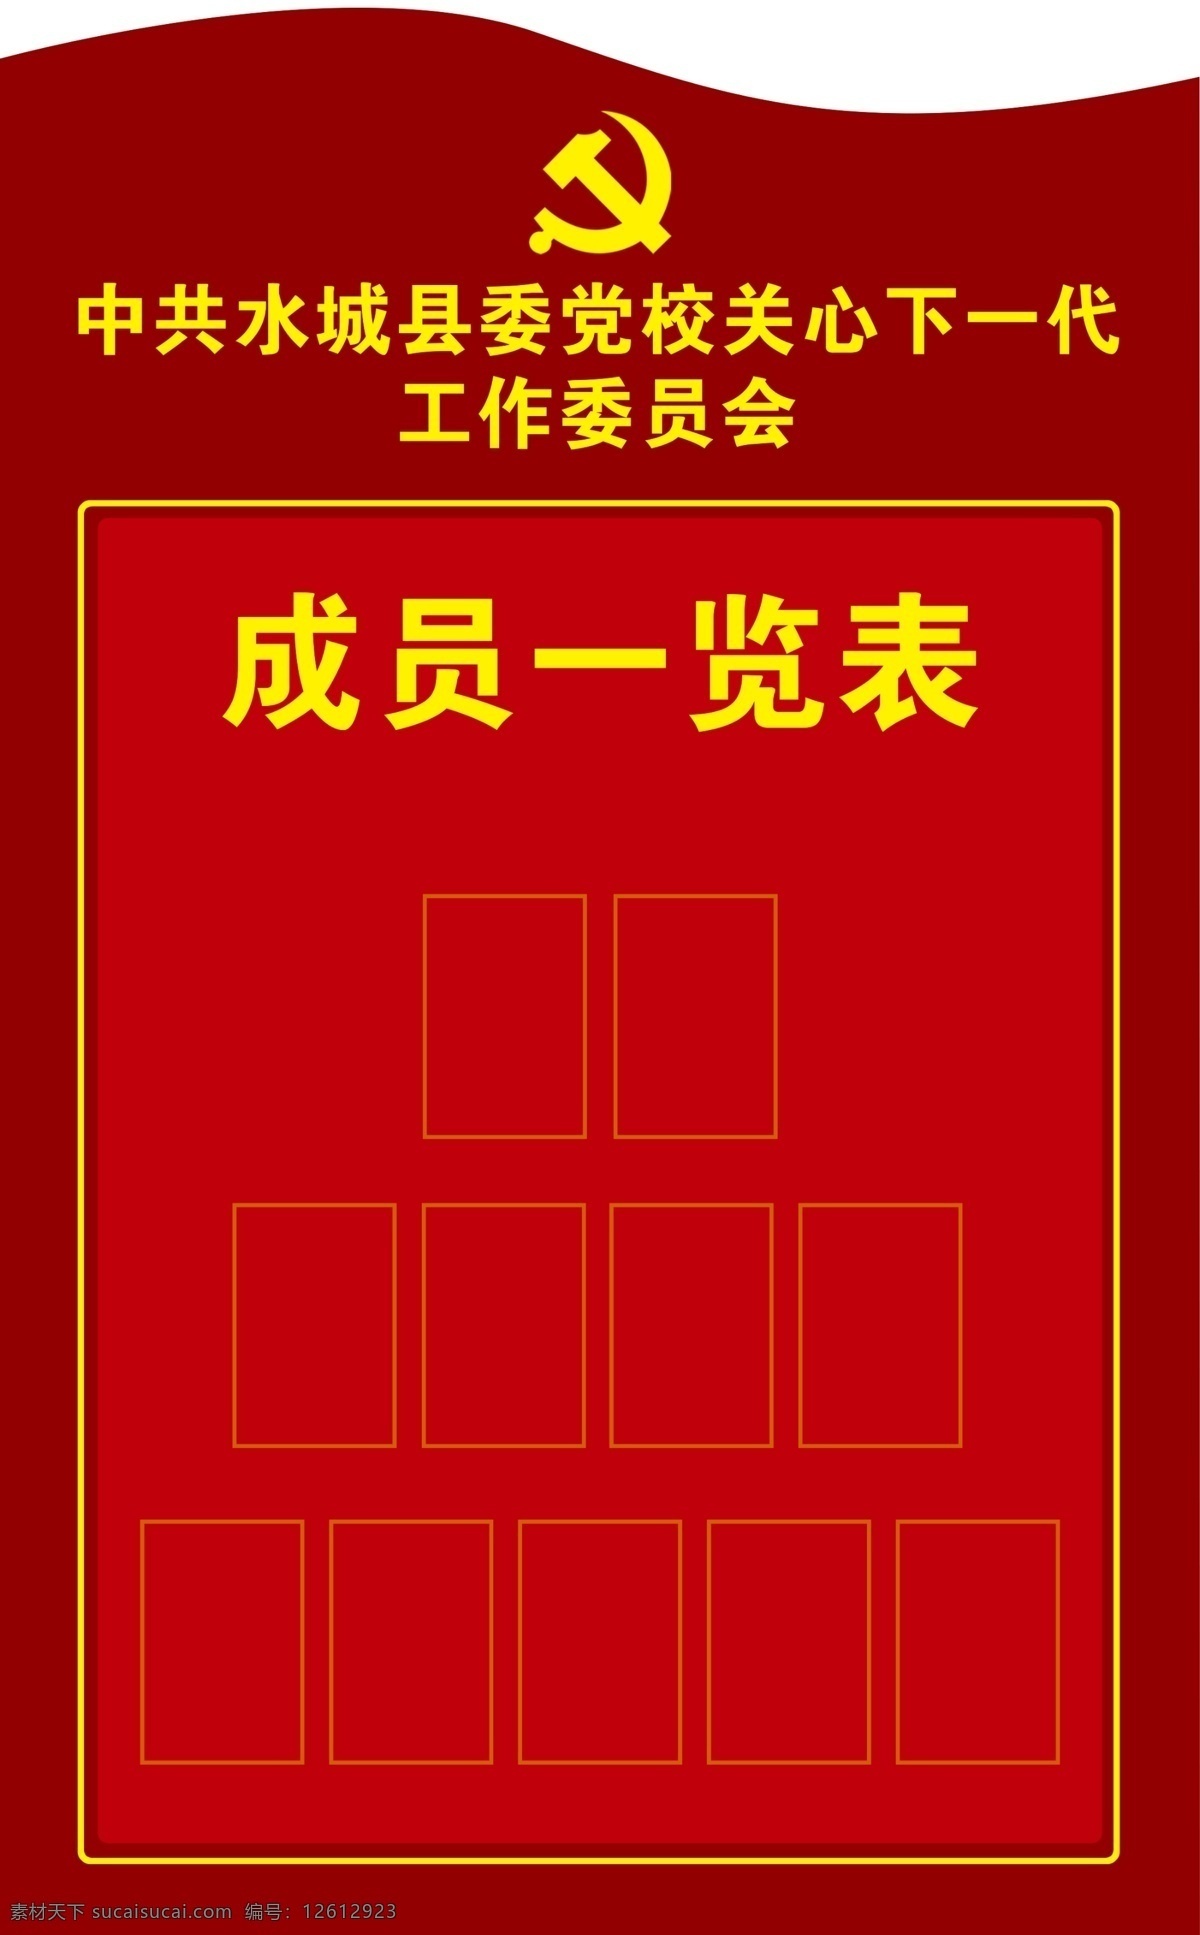 成员一览表 党建 中国梦 展板 文化墙 关工委 党建文化 展板模板